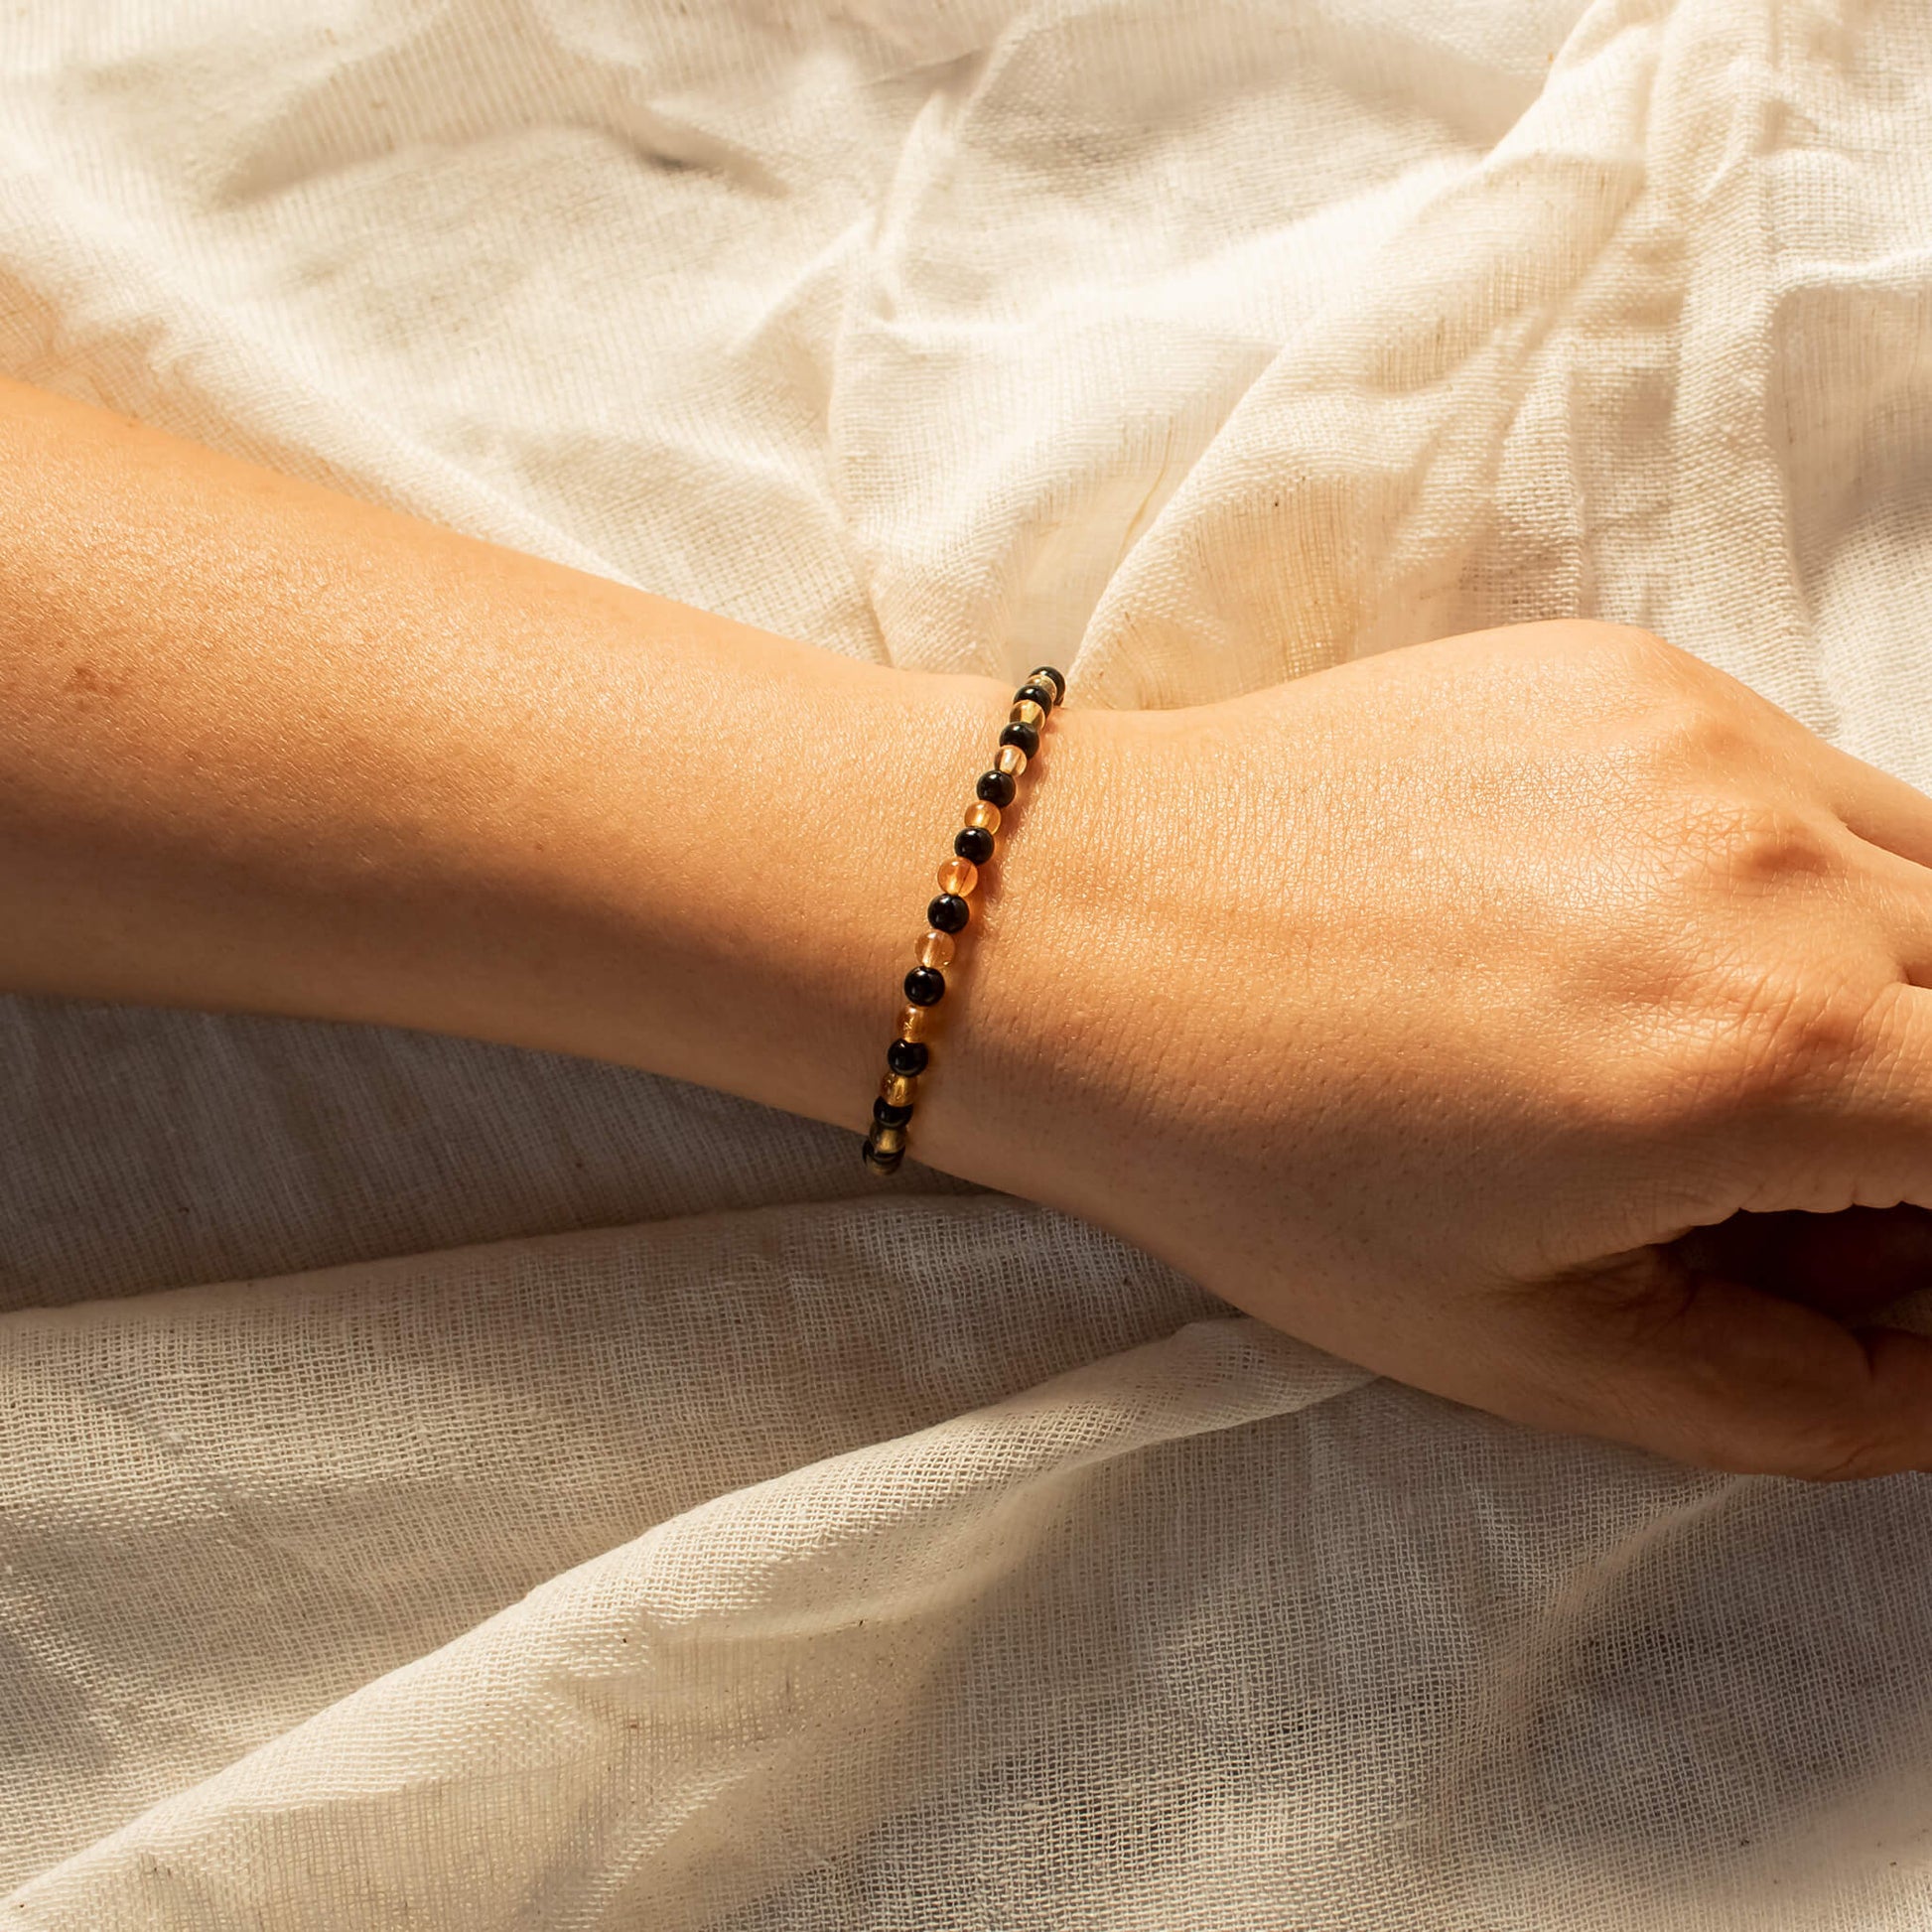 citrine and black tourmaline bracelet together 